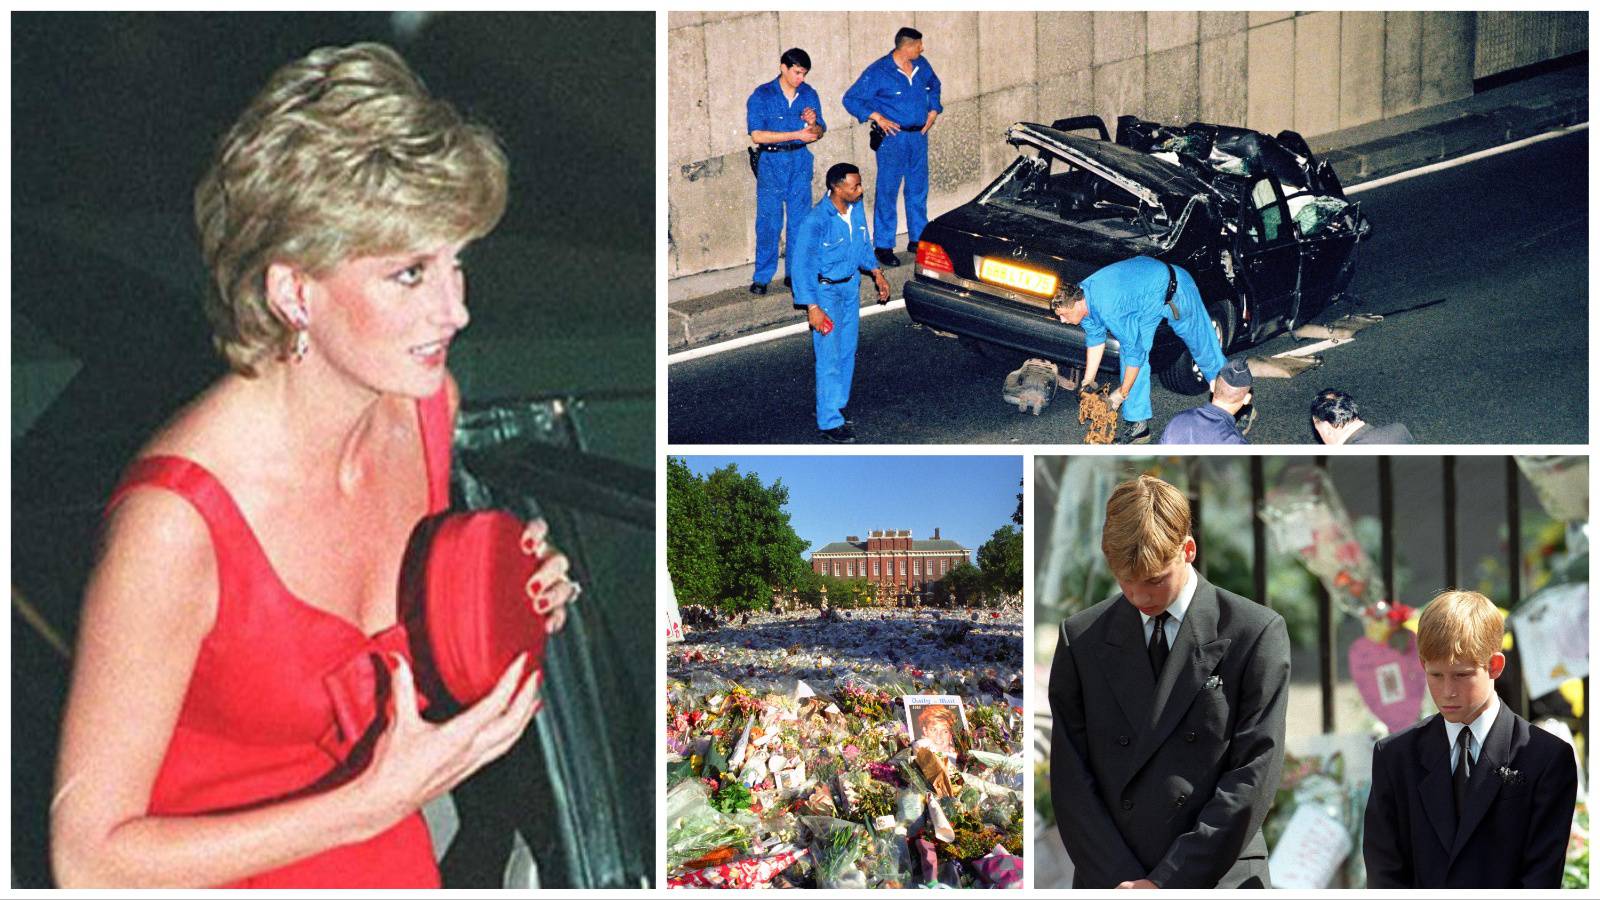 'Princeza Diana zadnje je rekla: 'Bože, što se dogodilo?' Vidjela je Dodijevo tijelo i sklopila oči'